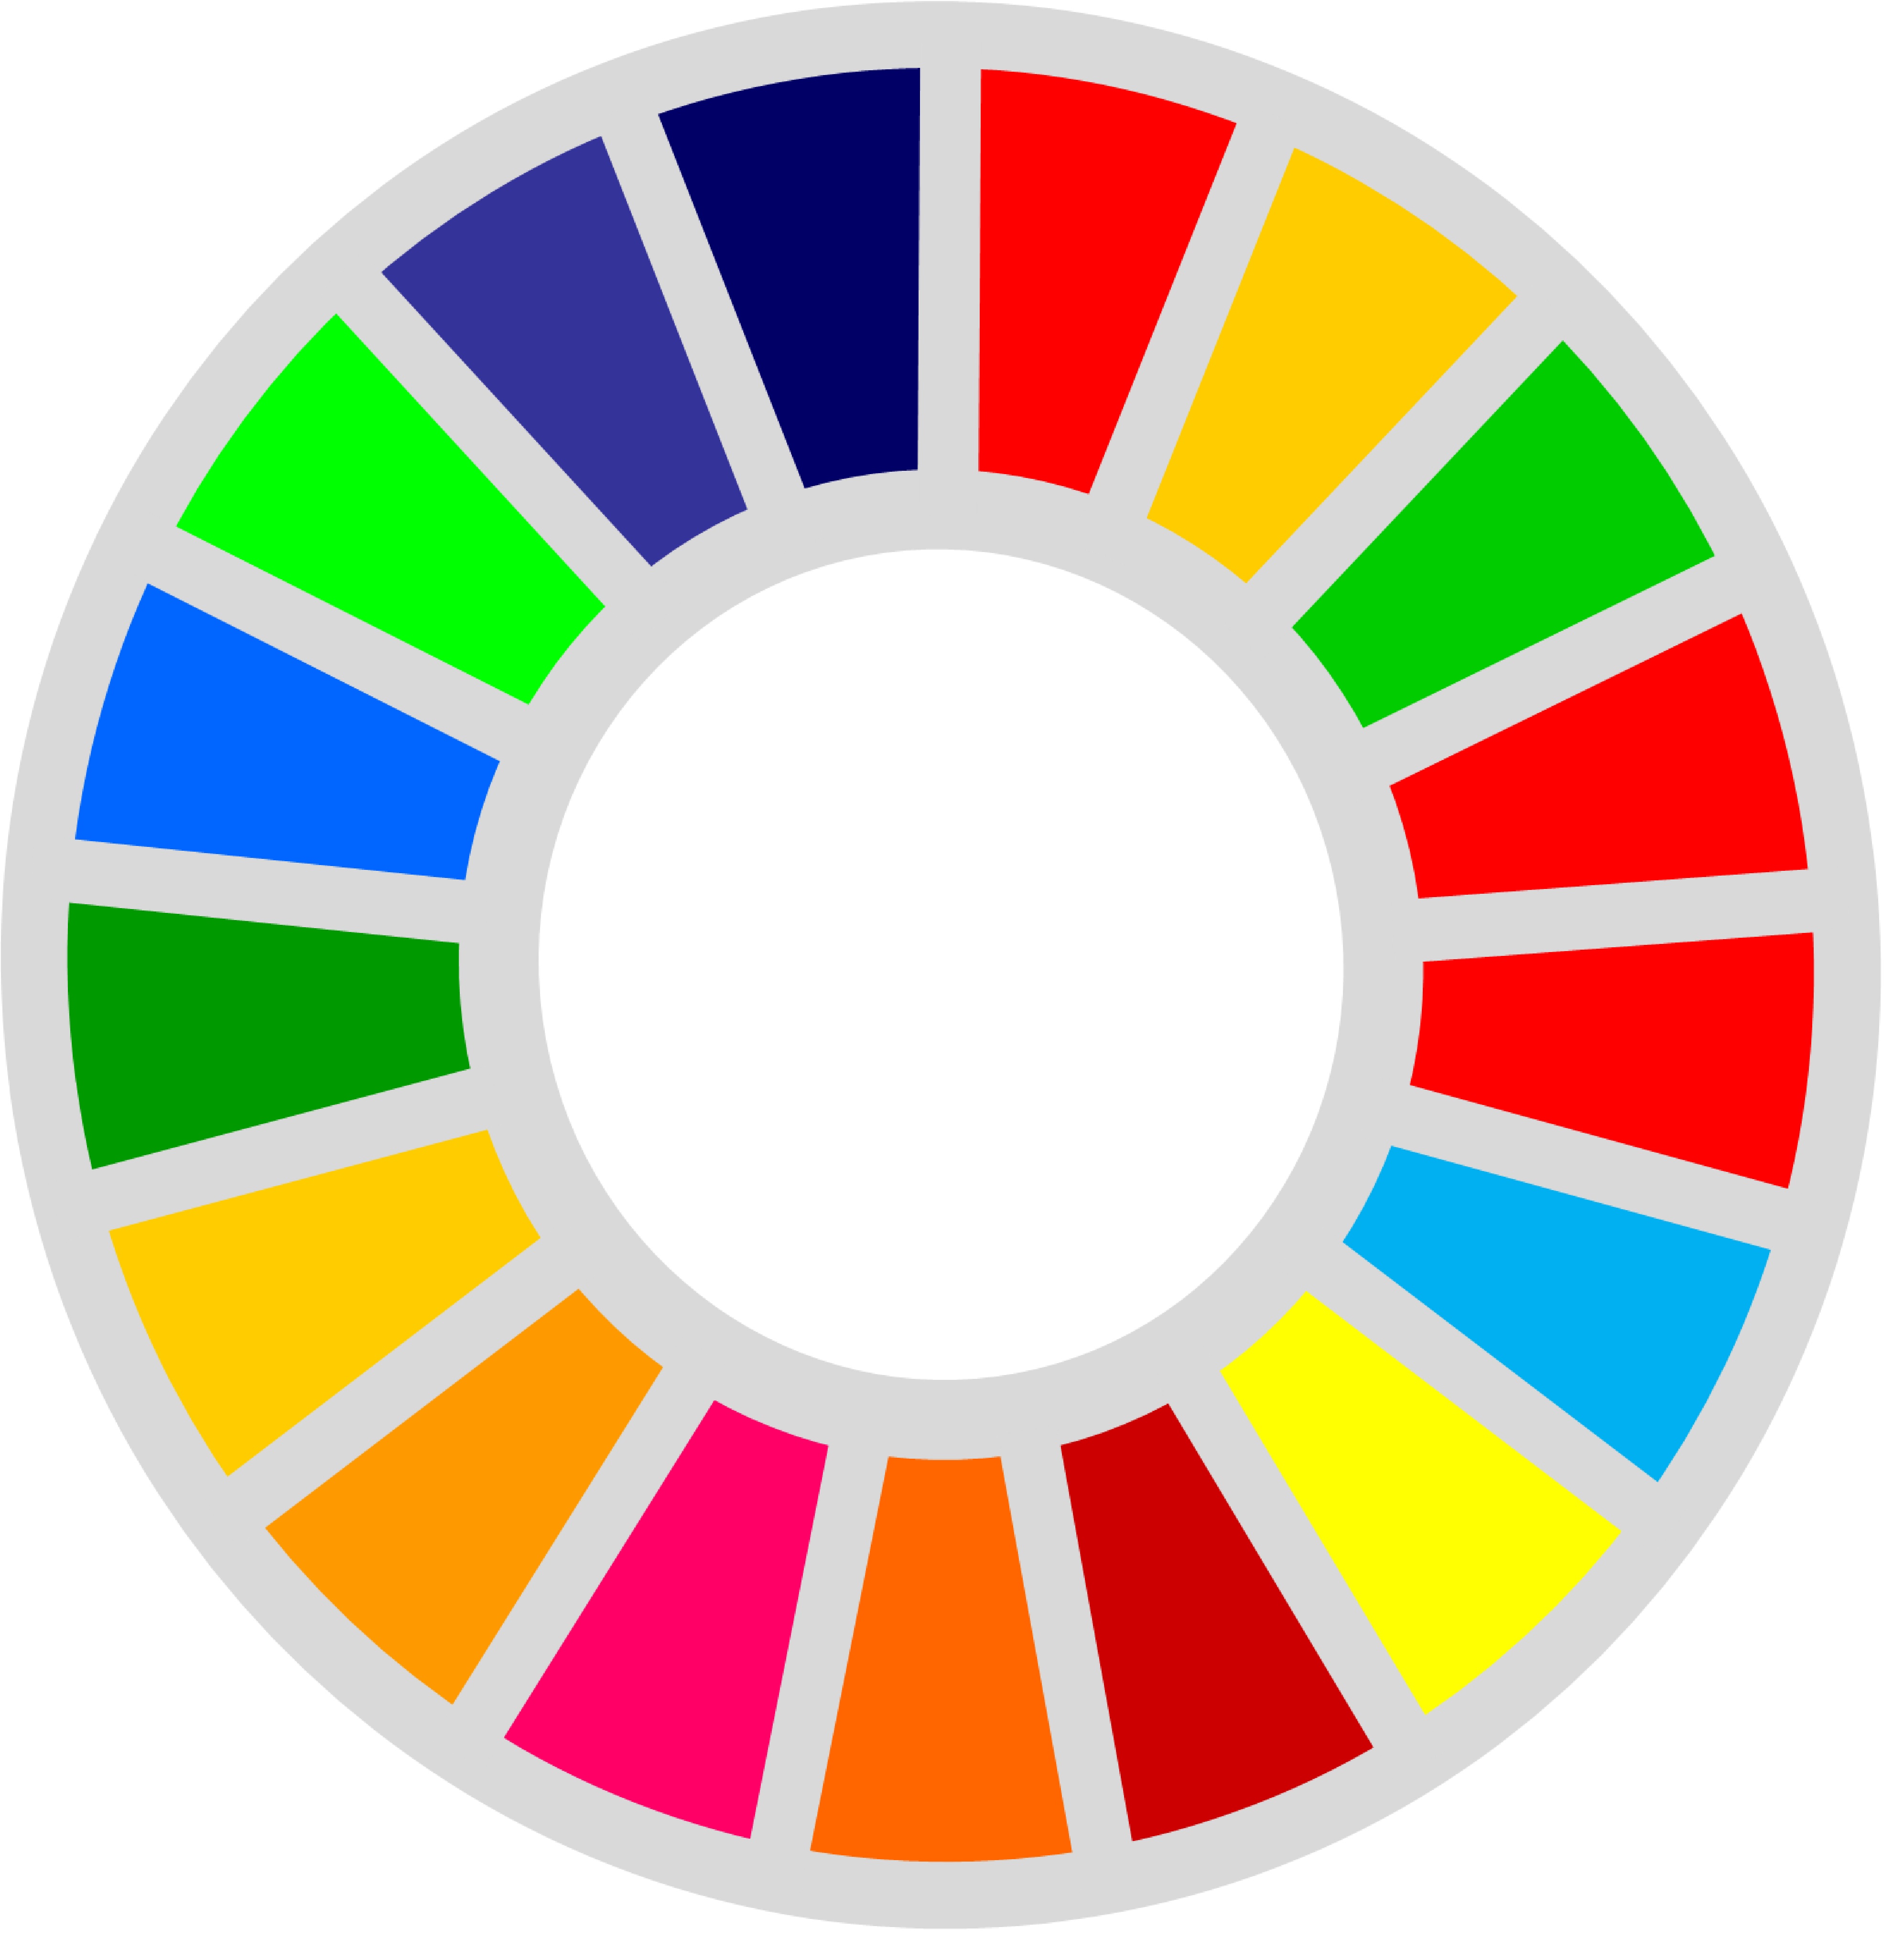  朝活100本ノック / SDGs・ESG投資 授業97日目【SDGs対極の意見も知ろう④】